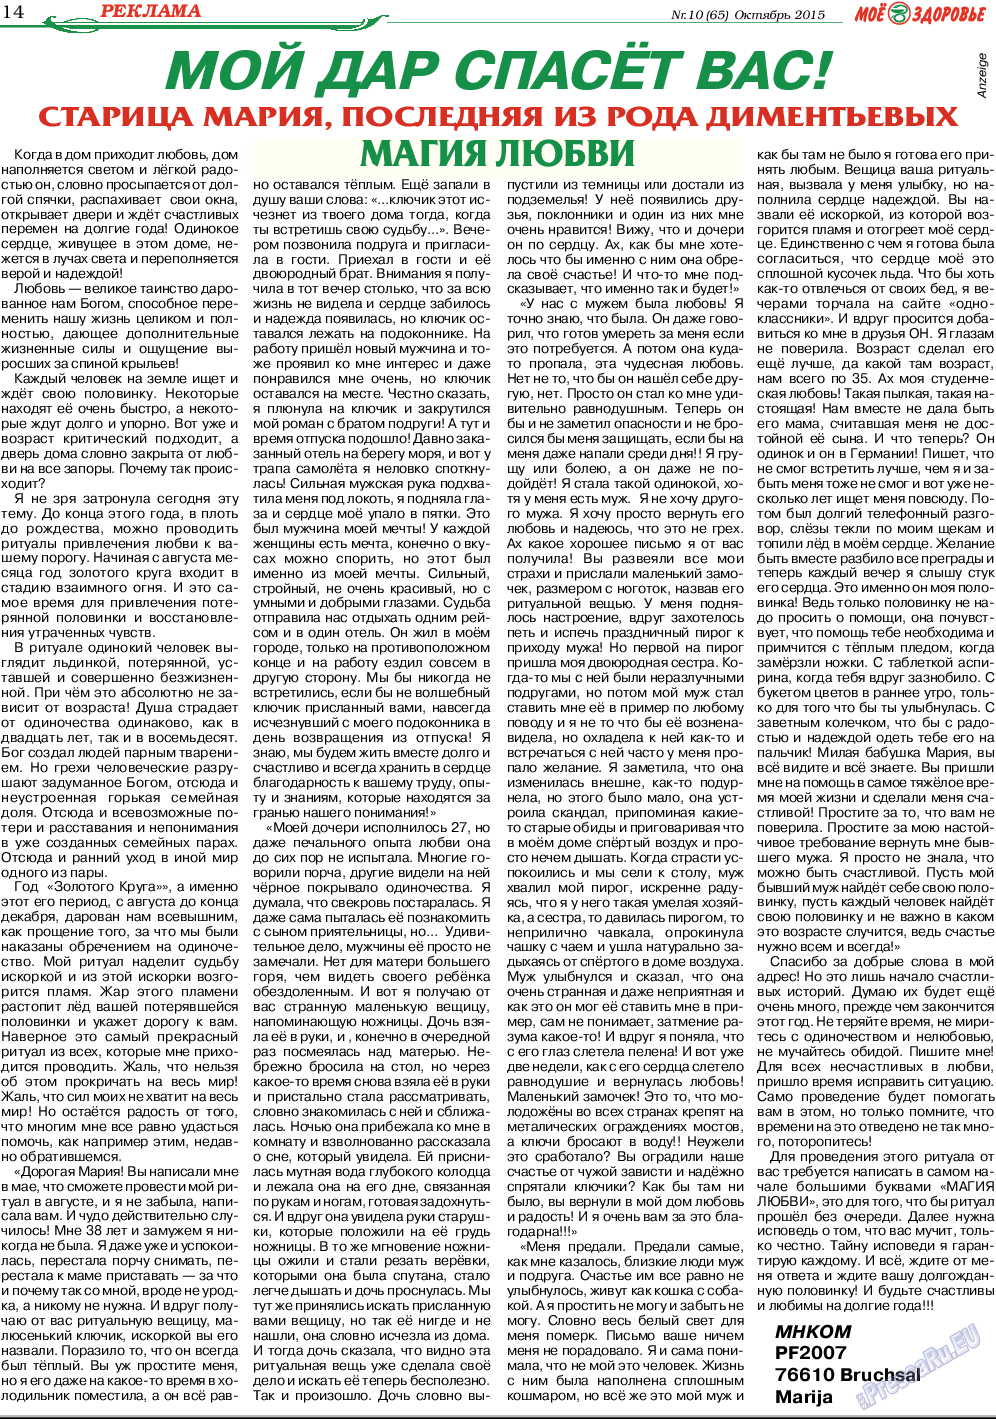 Кругозор (газета). 2015 год, номер 10, стр. 14